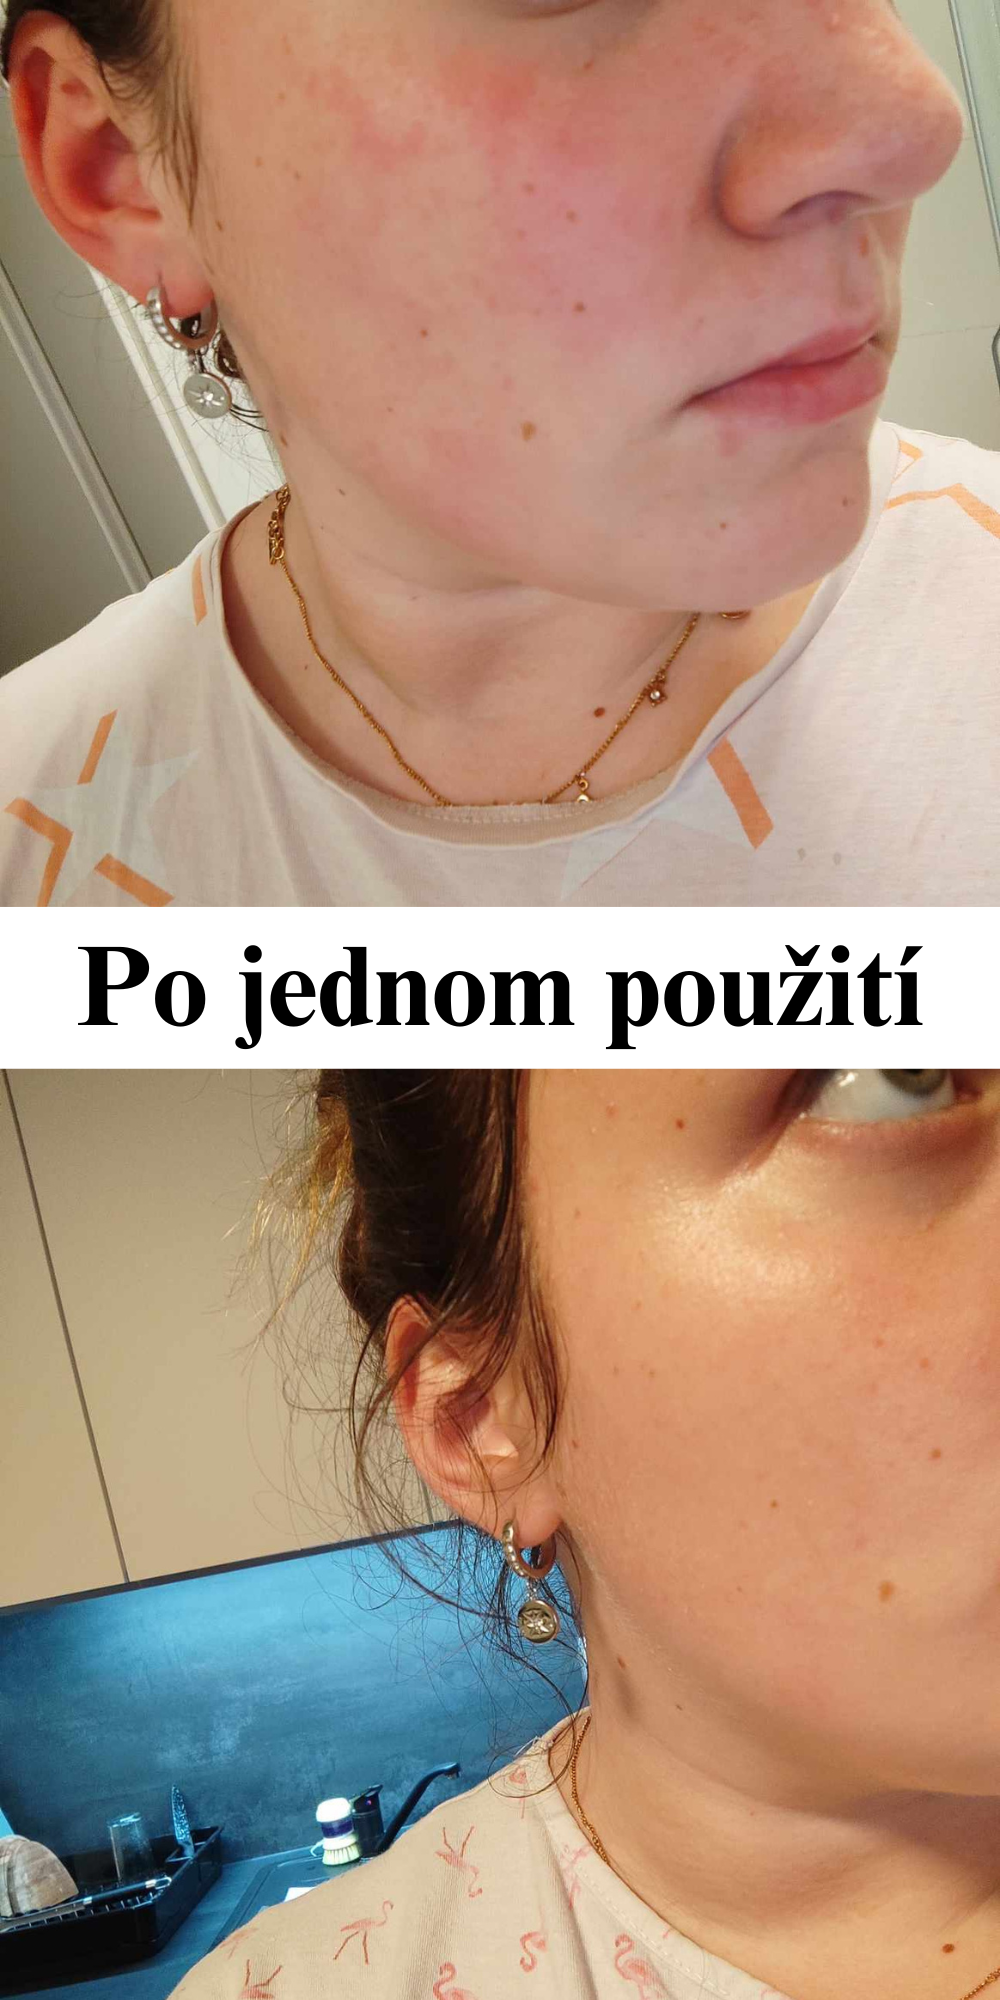 Účinky prírodnej kozmetiky Barbora Lori, pred a po, zmena už po 1 použití, kožné problémy